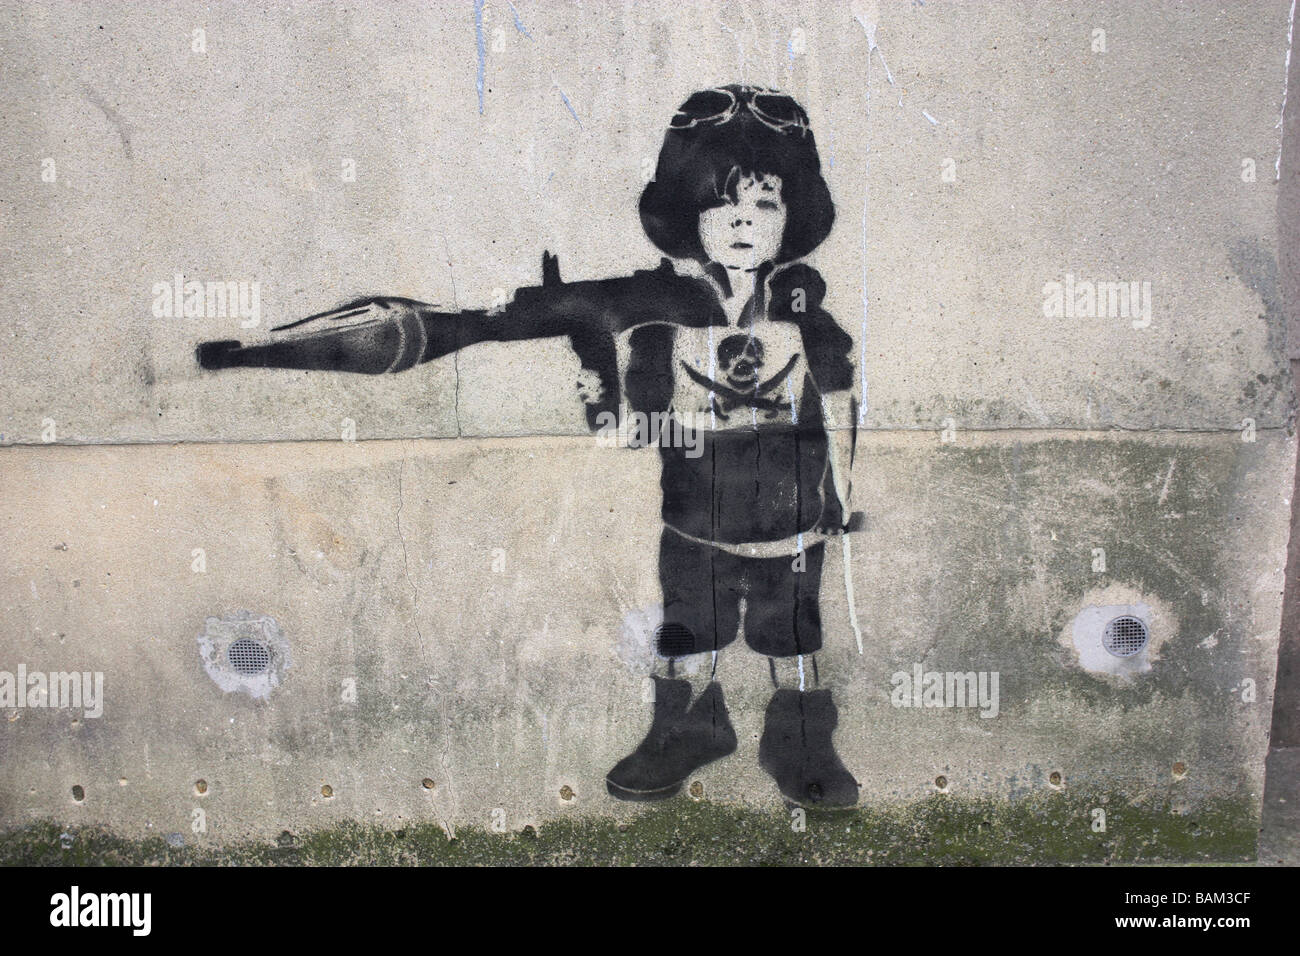 Banksy Straße Kunst Graffiti zeigt Kind mit Rakete angetrieben Granate Stockfoto